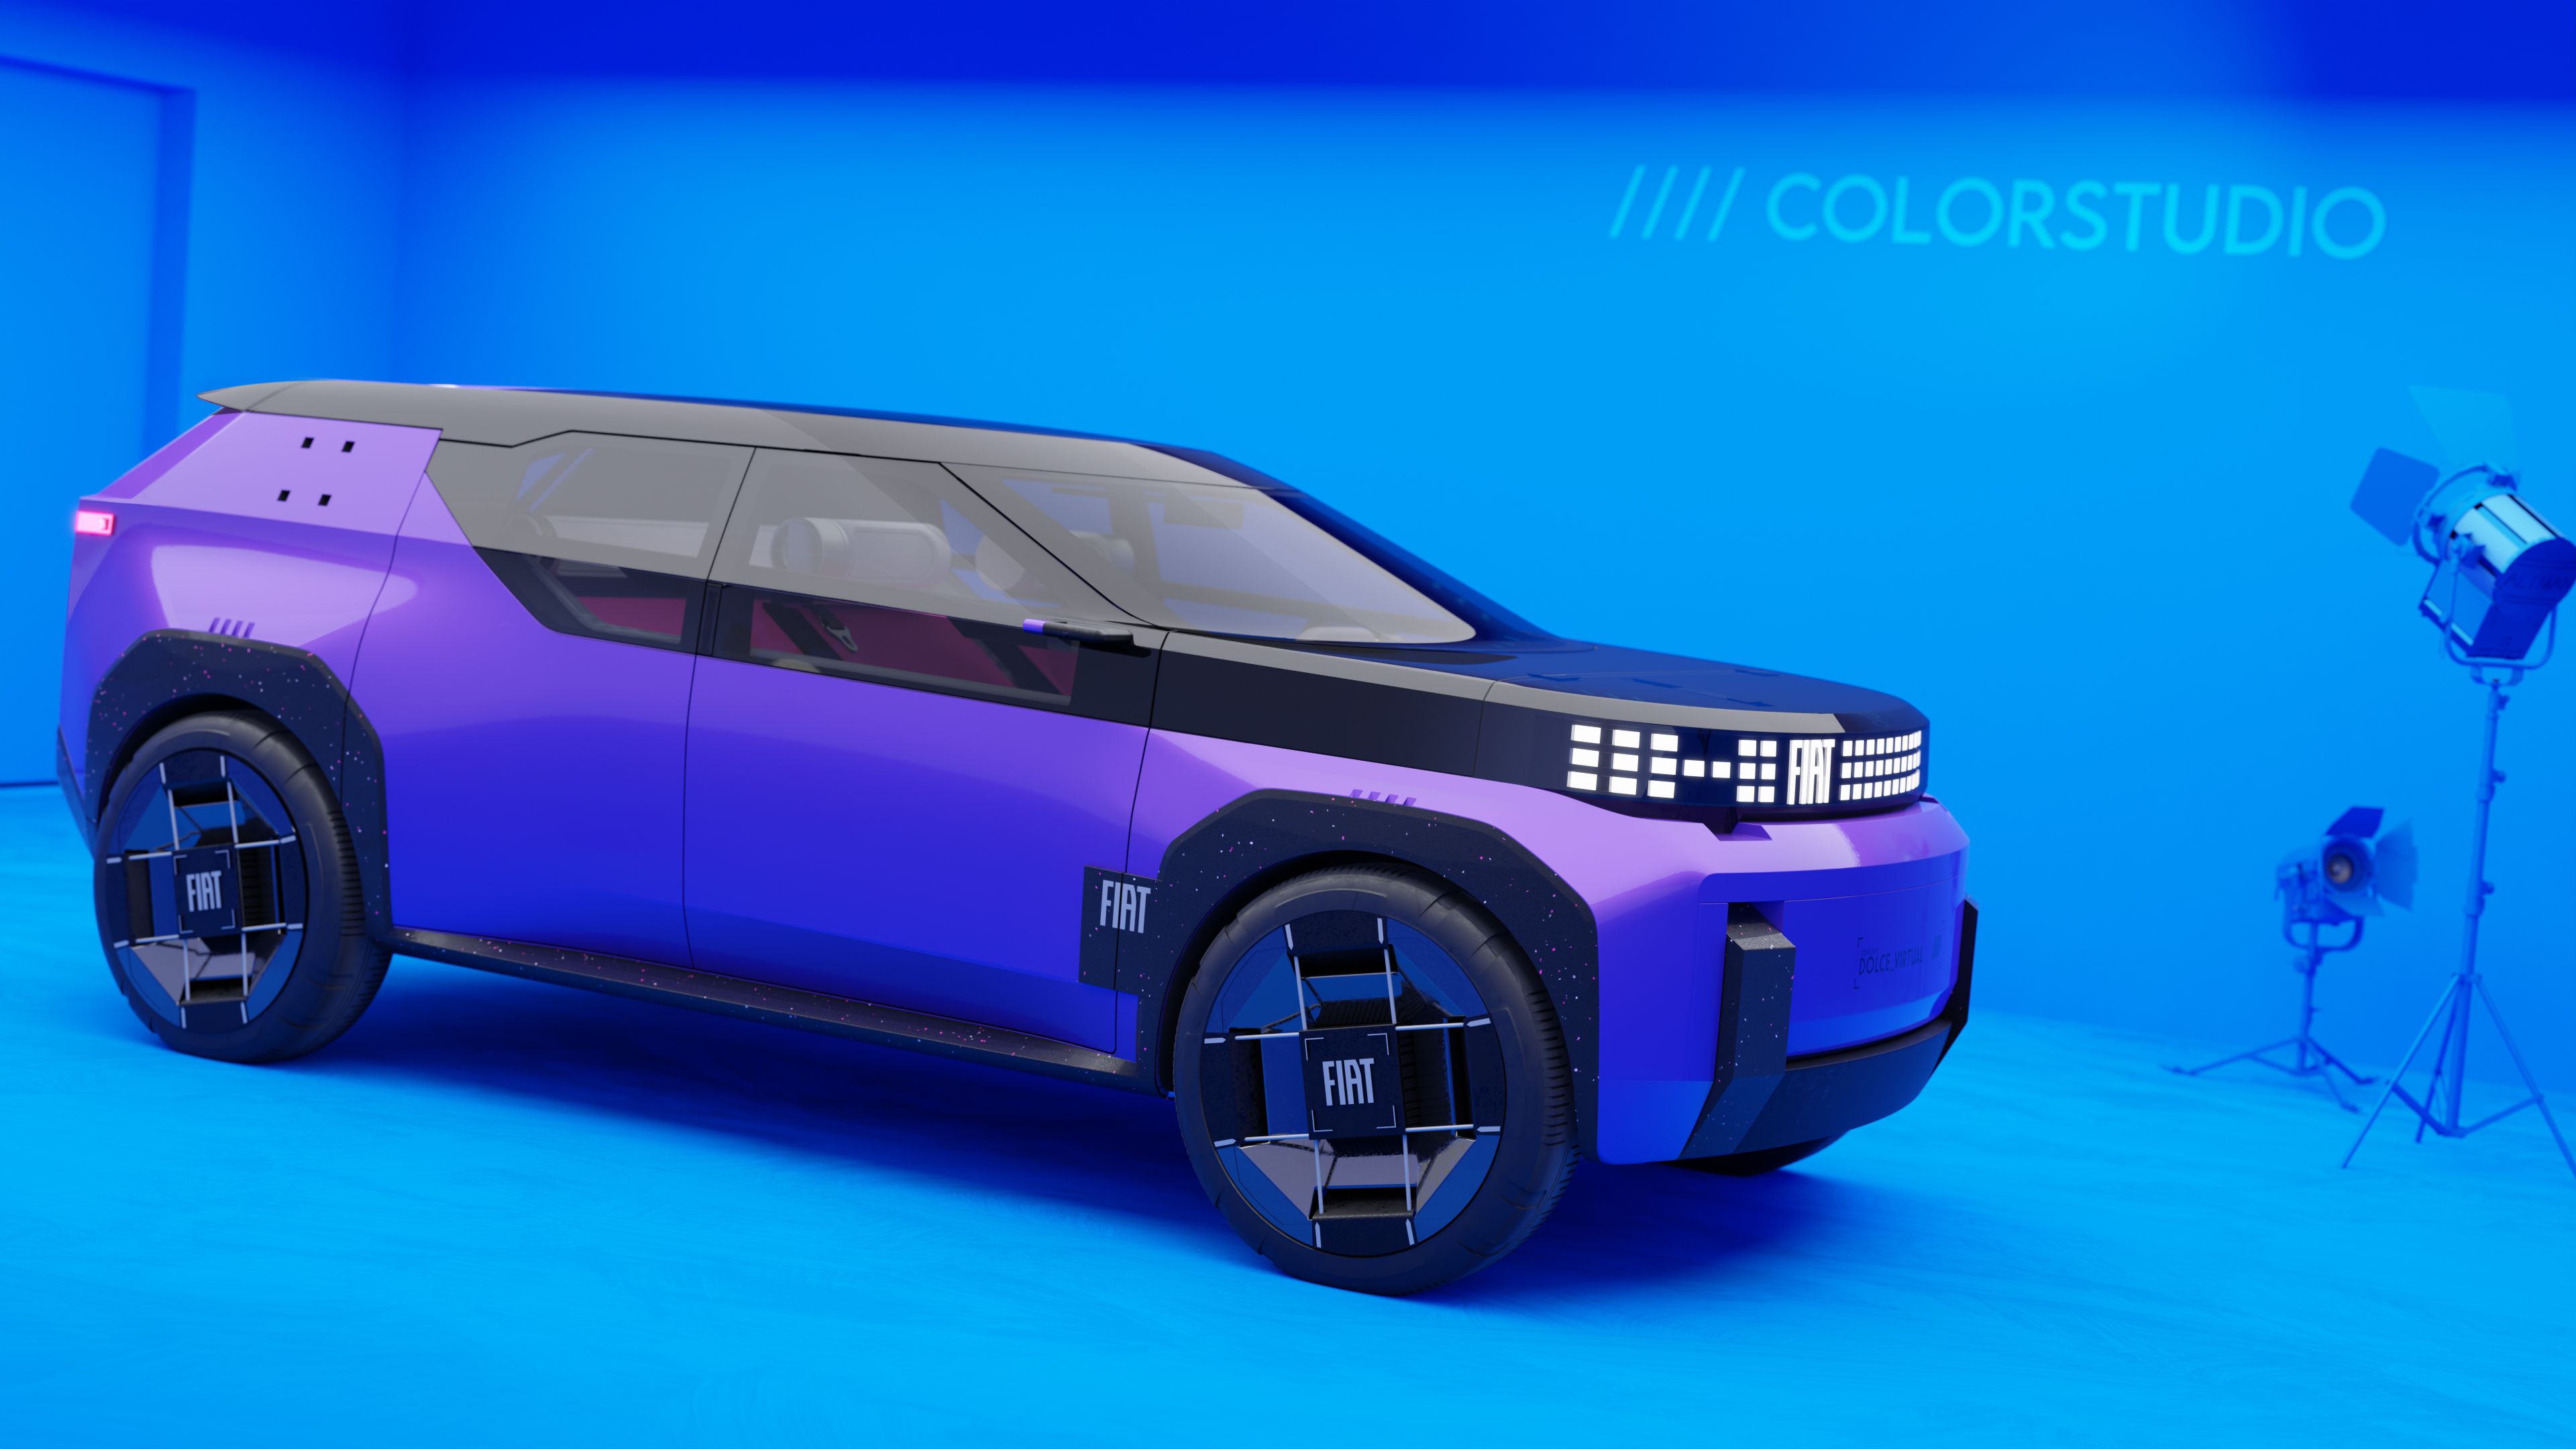 Fiat SUV Concept